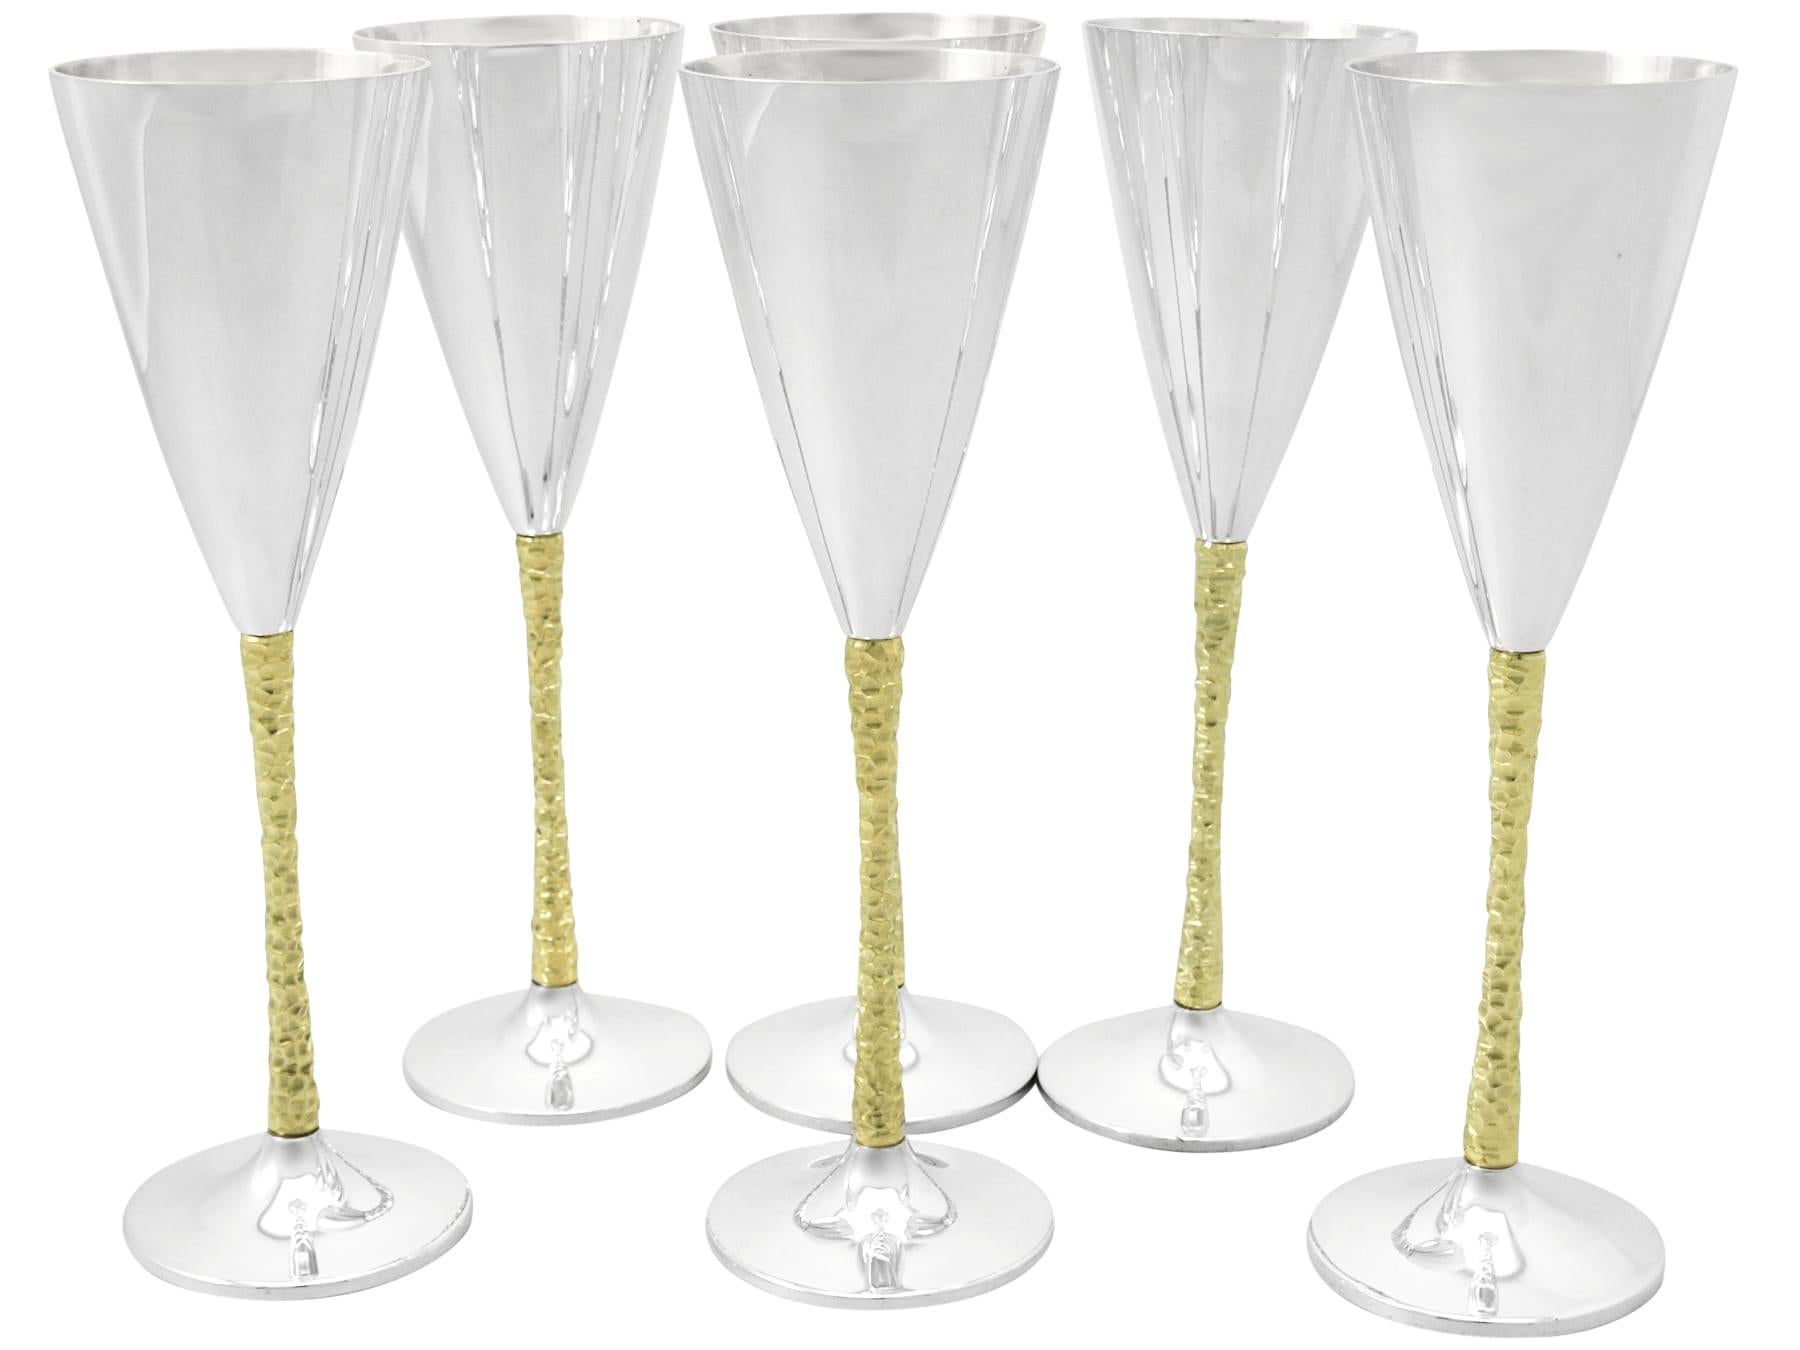 Un ensemble fin et impressionnant de six flûtes à champagne en argent sterling anglais de l'époque Elizabeth II, fabriquées par Stuart Devlin ; un ajout à notre gamme d'argenterie de collection.

Ces impressionnantes flûtes à champagne vintage